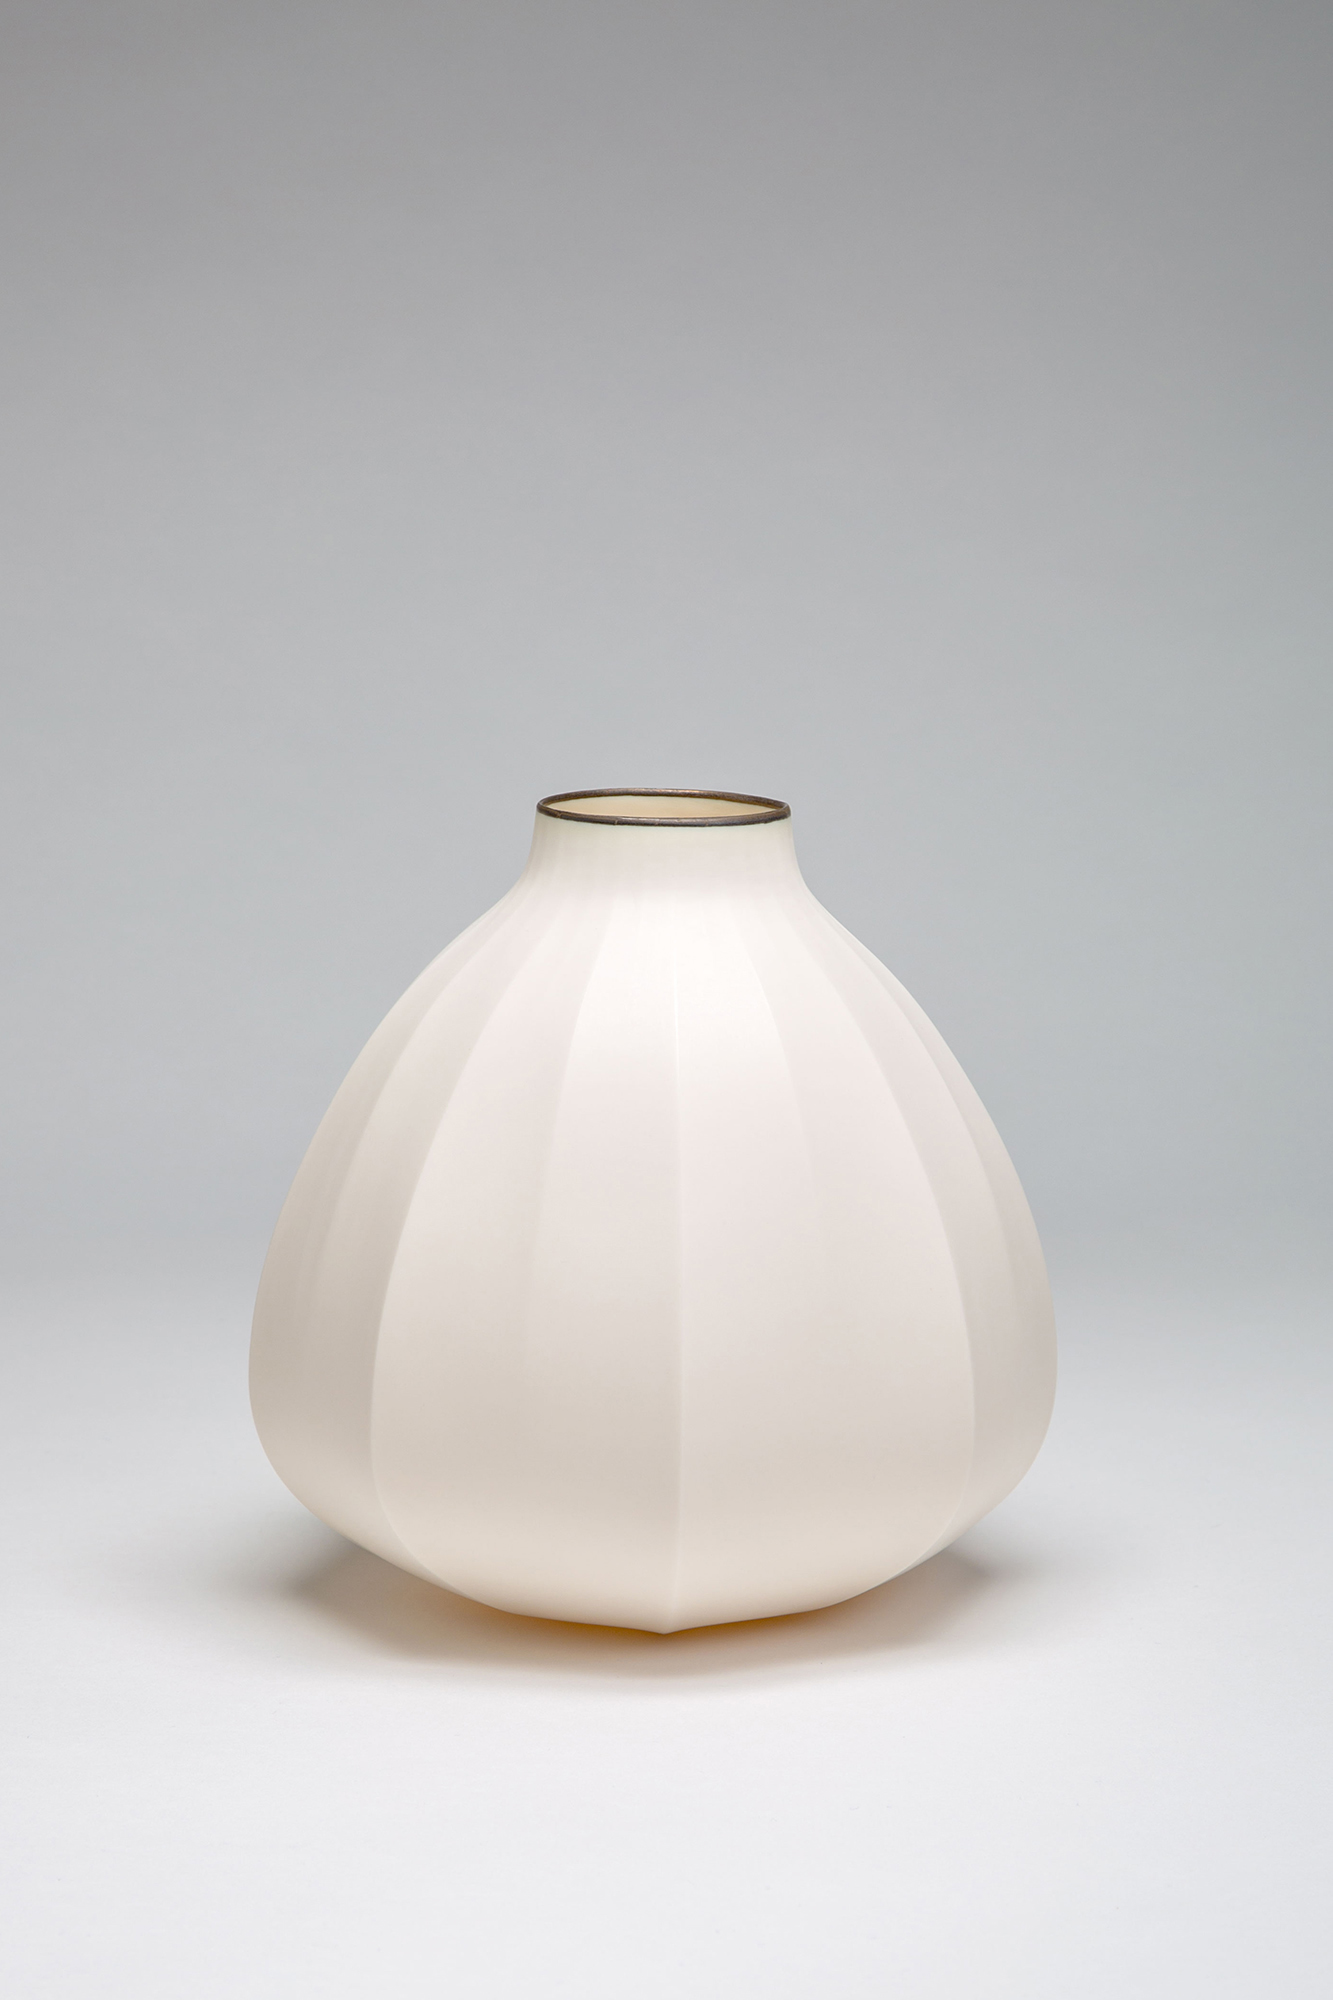 Mie Kongo 2015 - Loft vase  Porcelain, bronze glaze